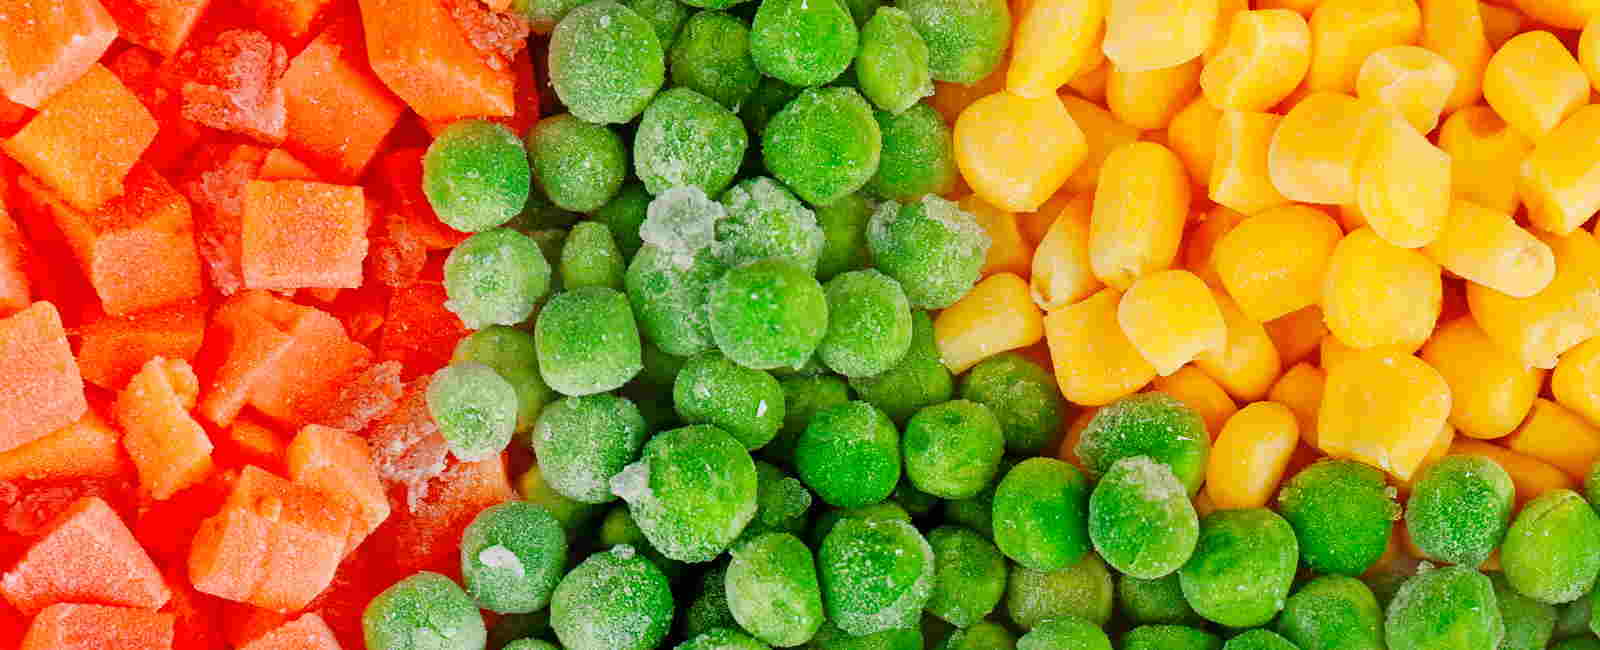 Valores nutricionales de la verdura congelada